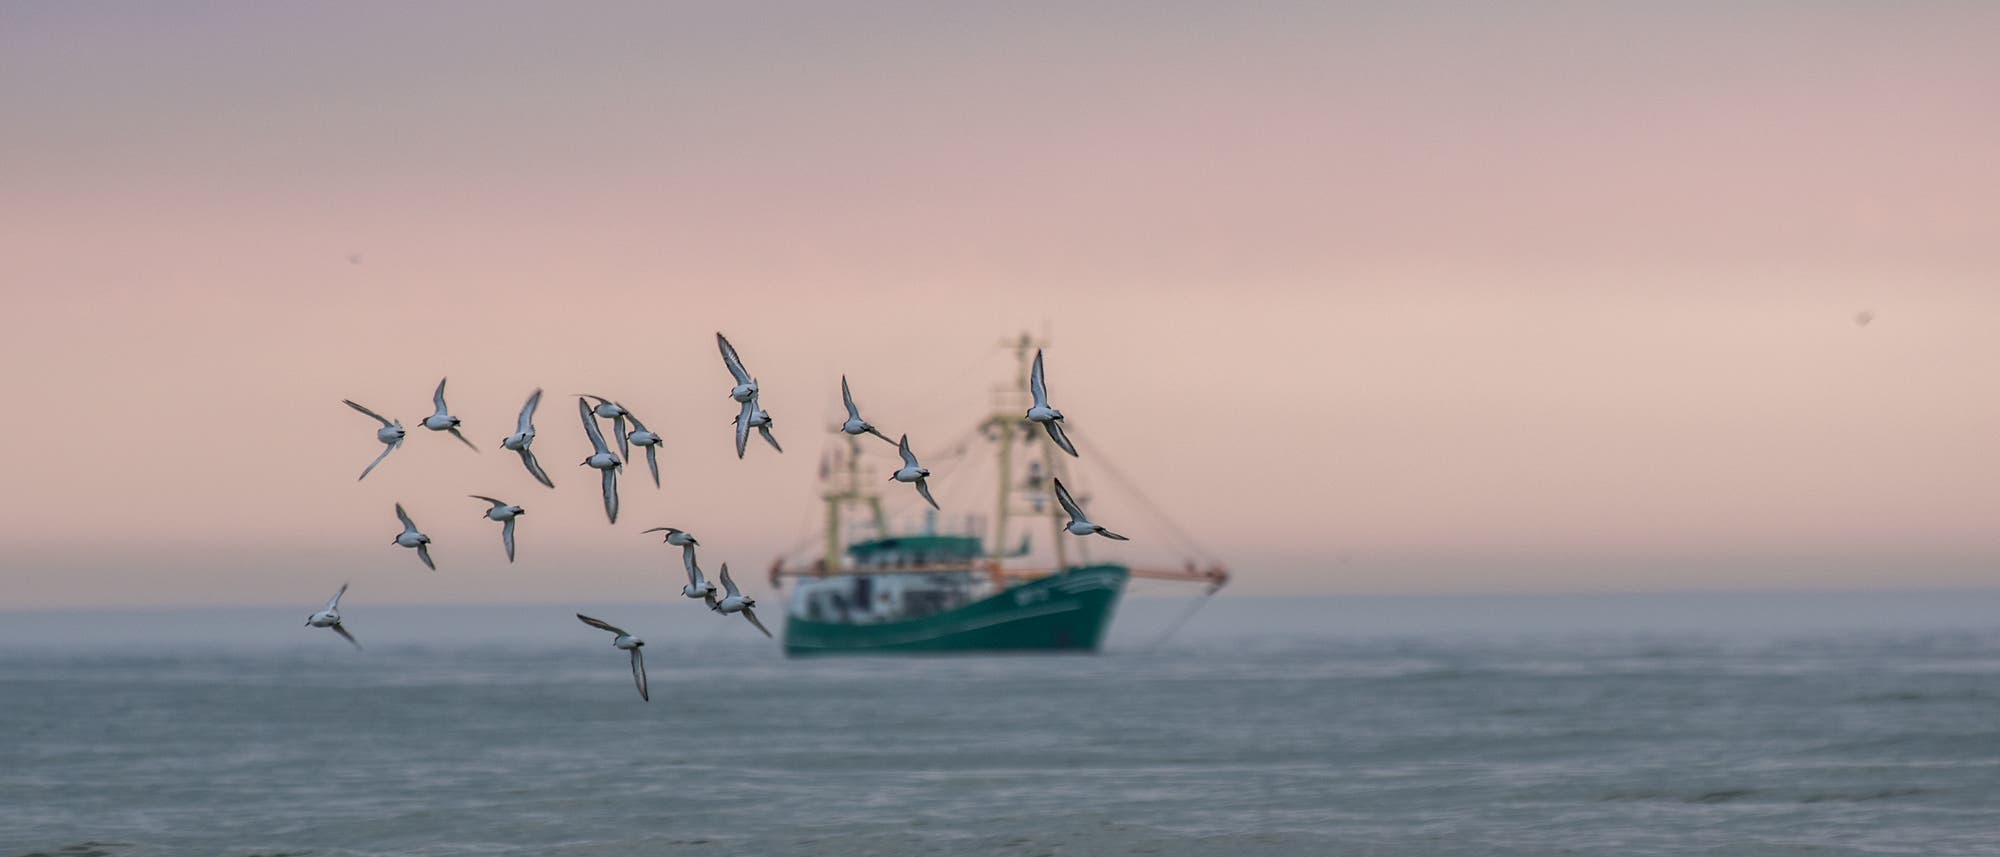 Fischer in der Nordsee dürfen künftig deutlich weniger fangen, damit die Bestände sicher sind.